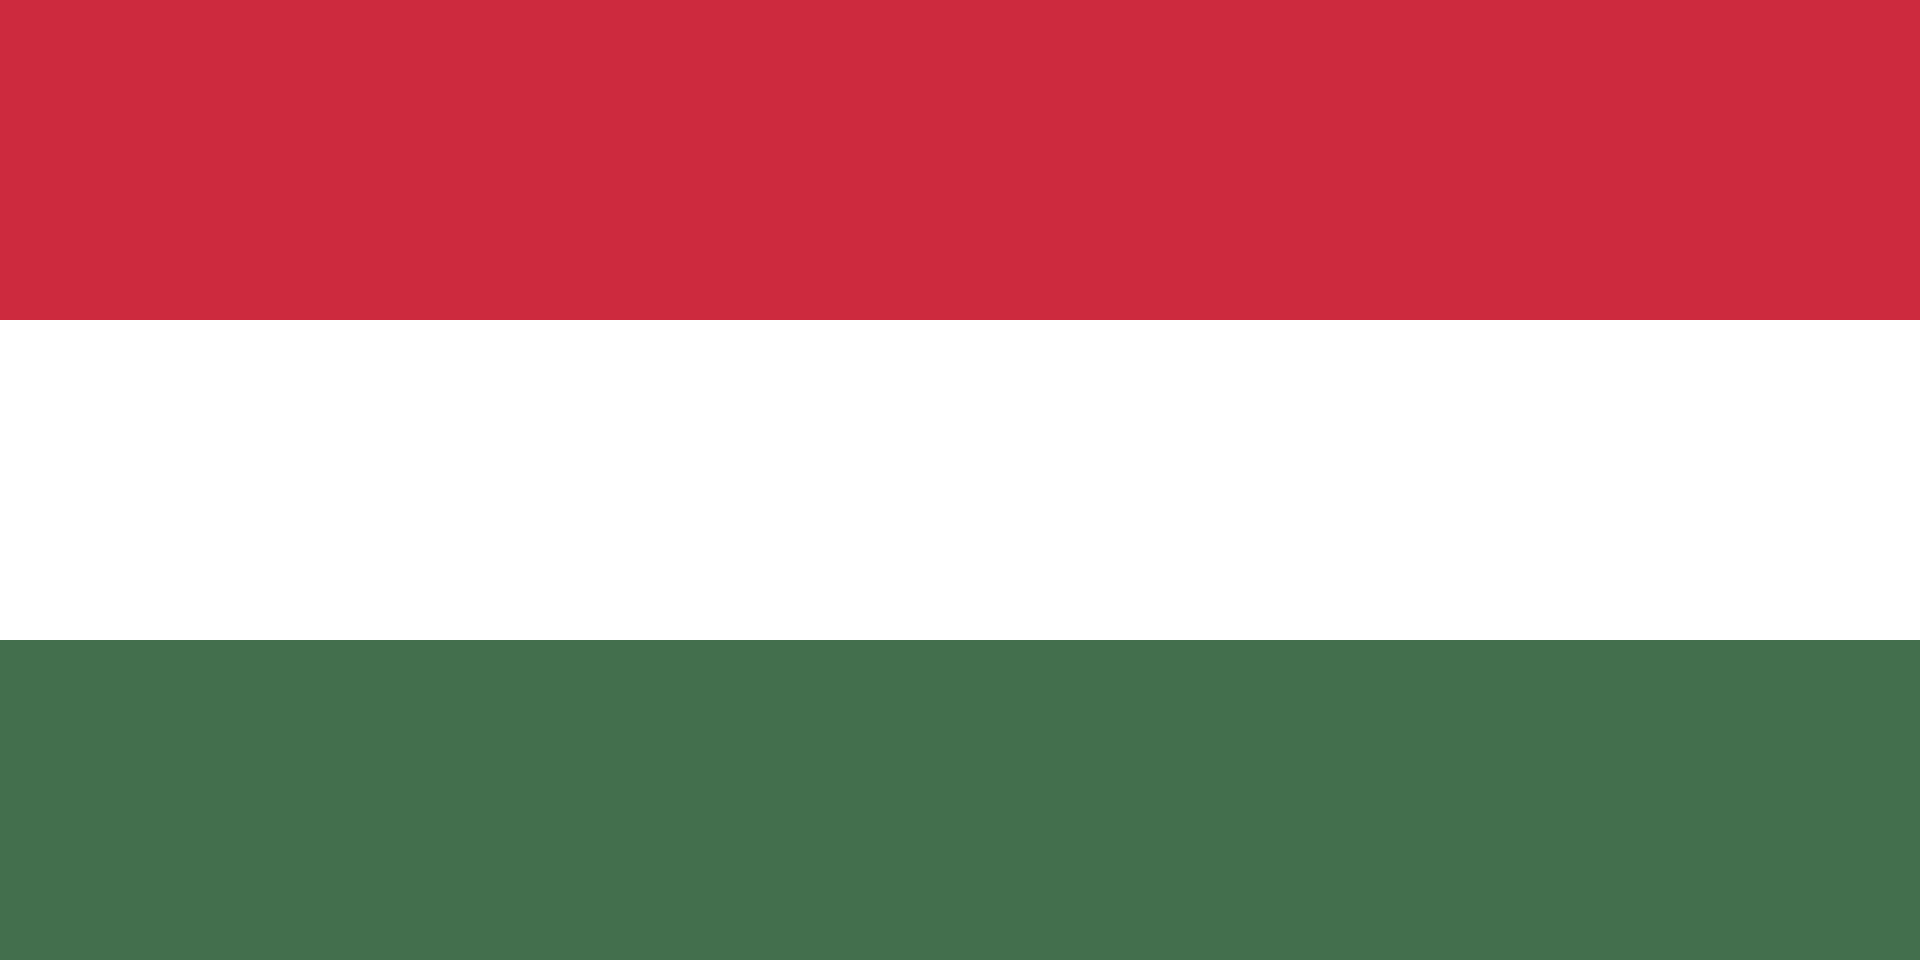 Minek a jelképe a piros szín Magyarország zászlajában?